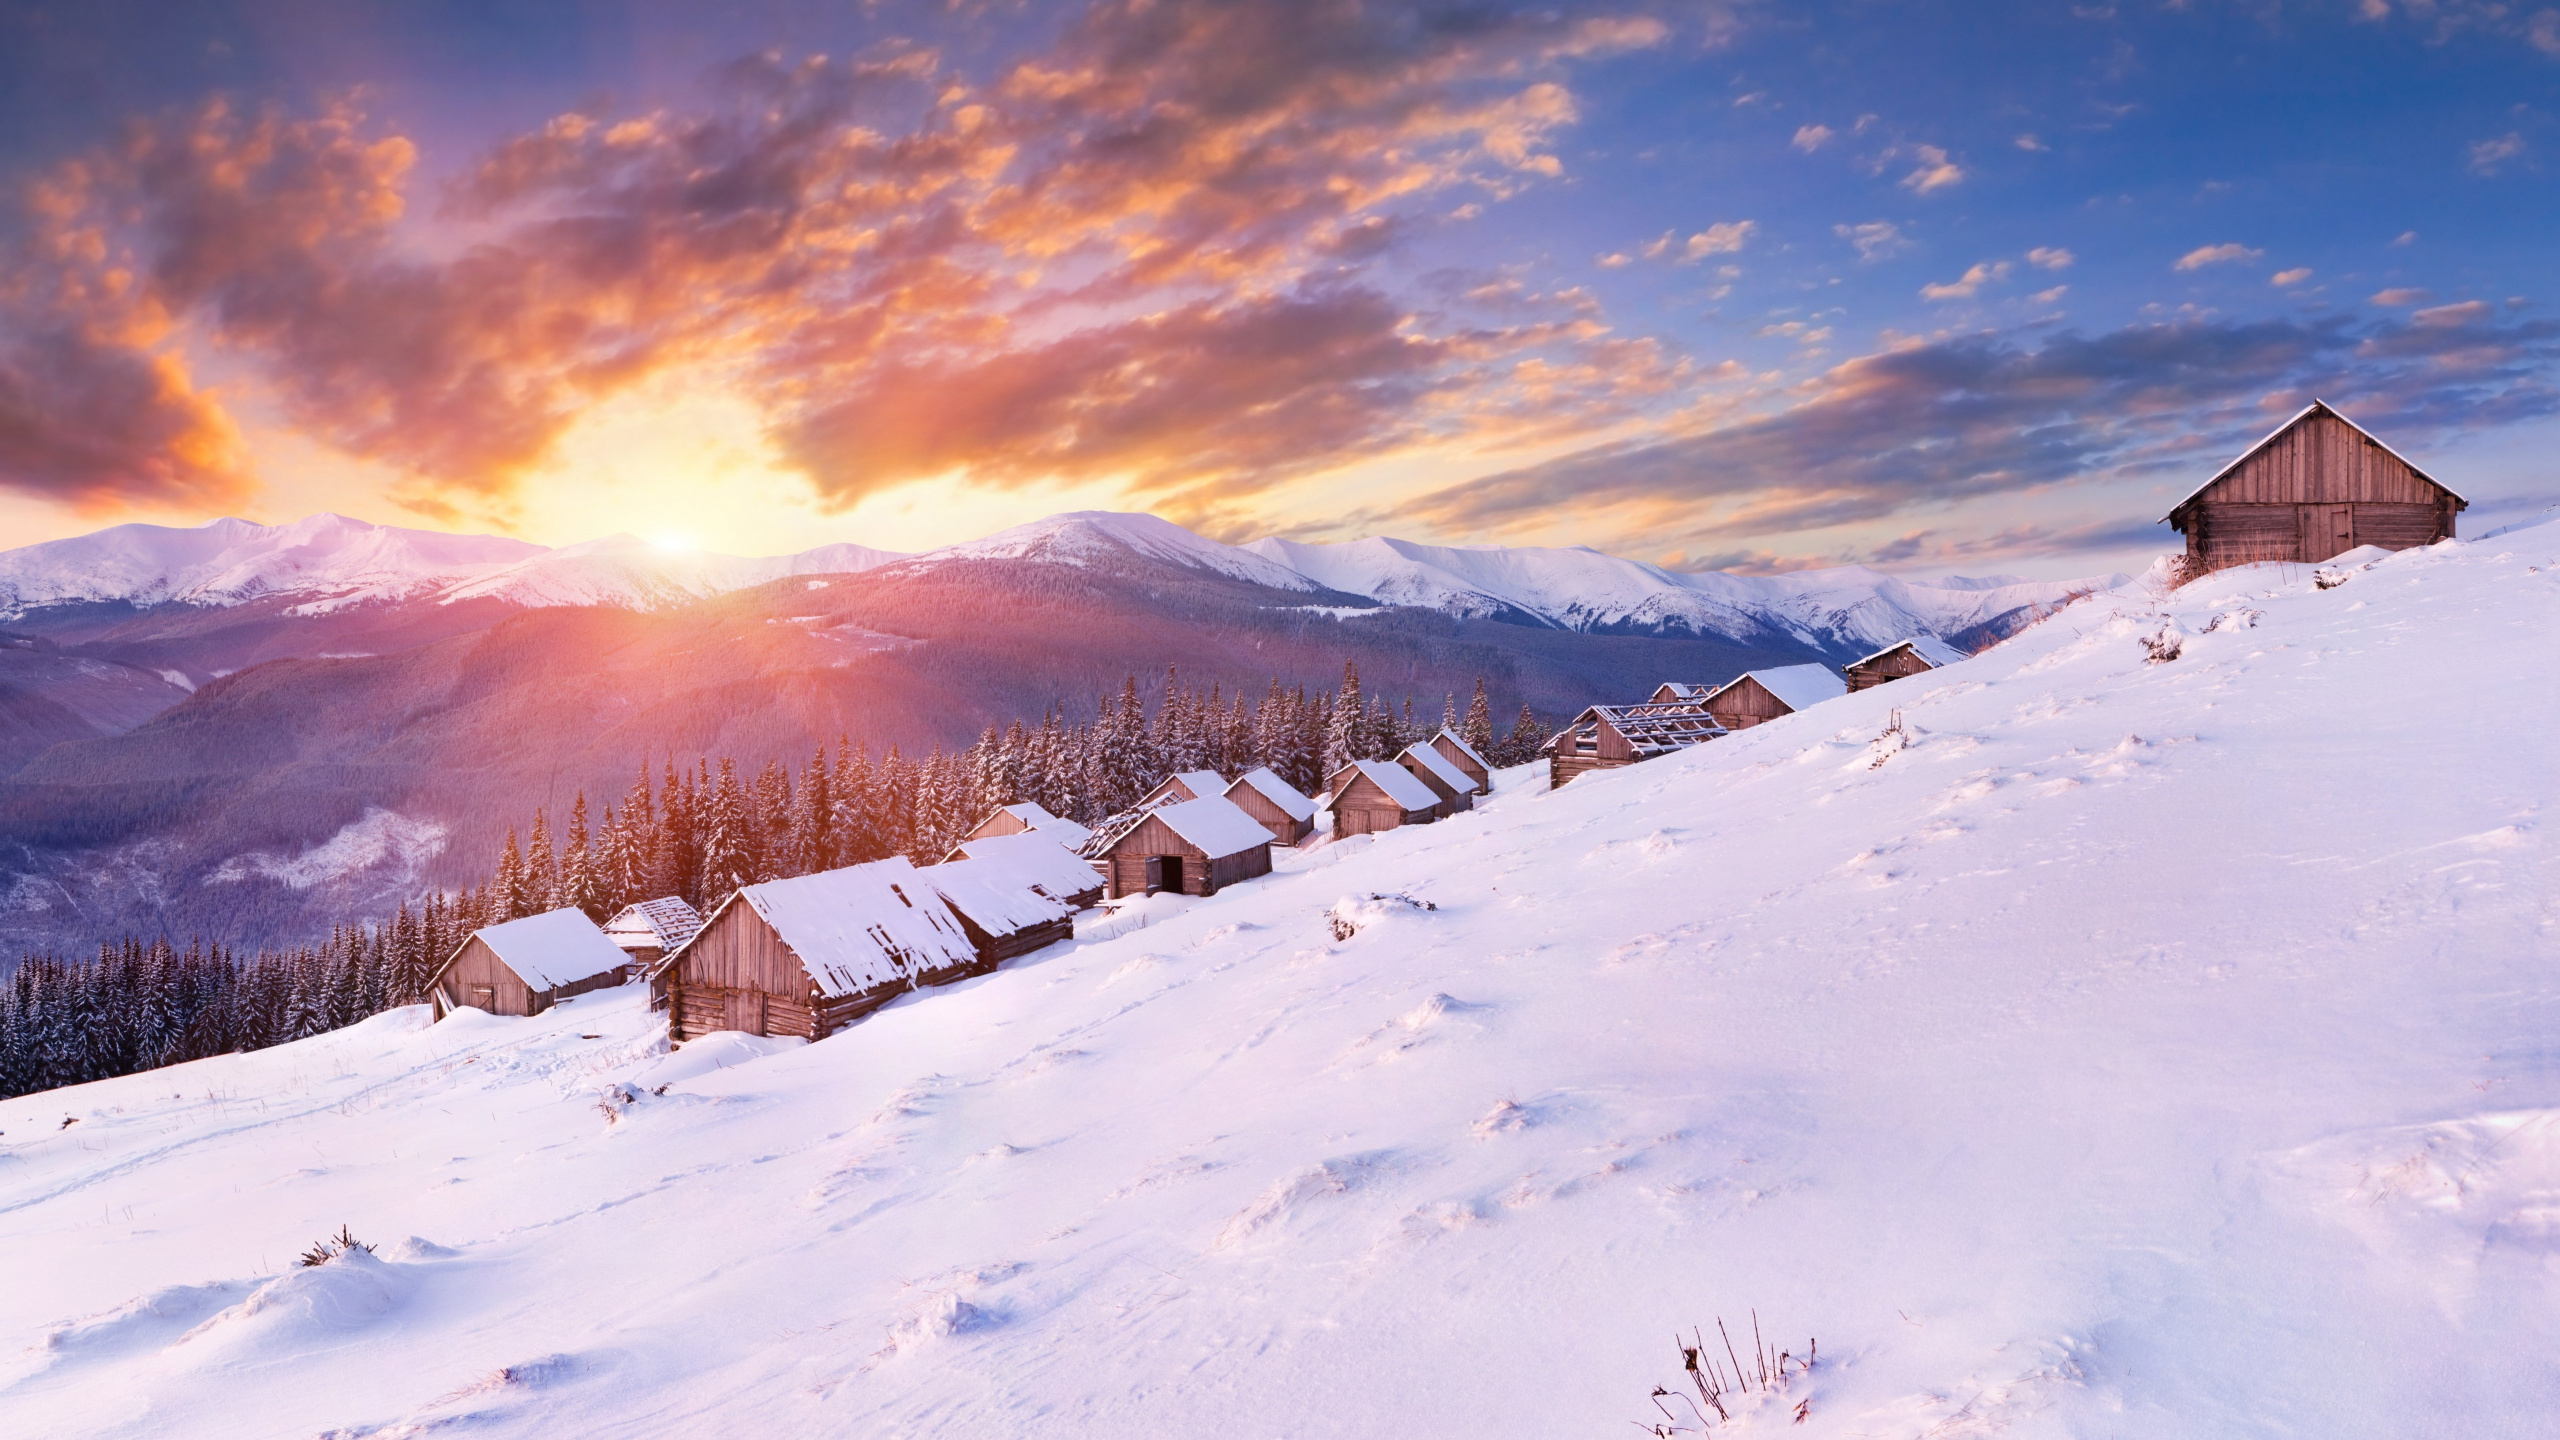 山脉, 冬天, 阿尔卑斯山, 冻结, 农舍 壁纸 2560x1440 允许